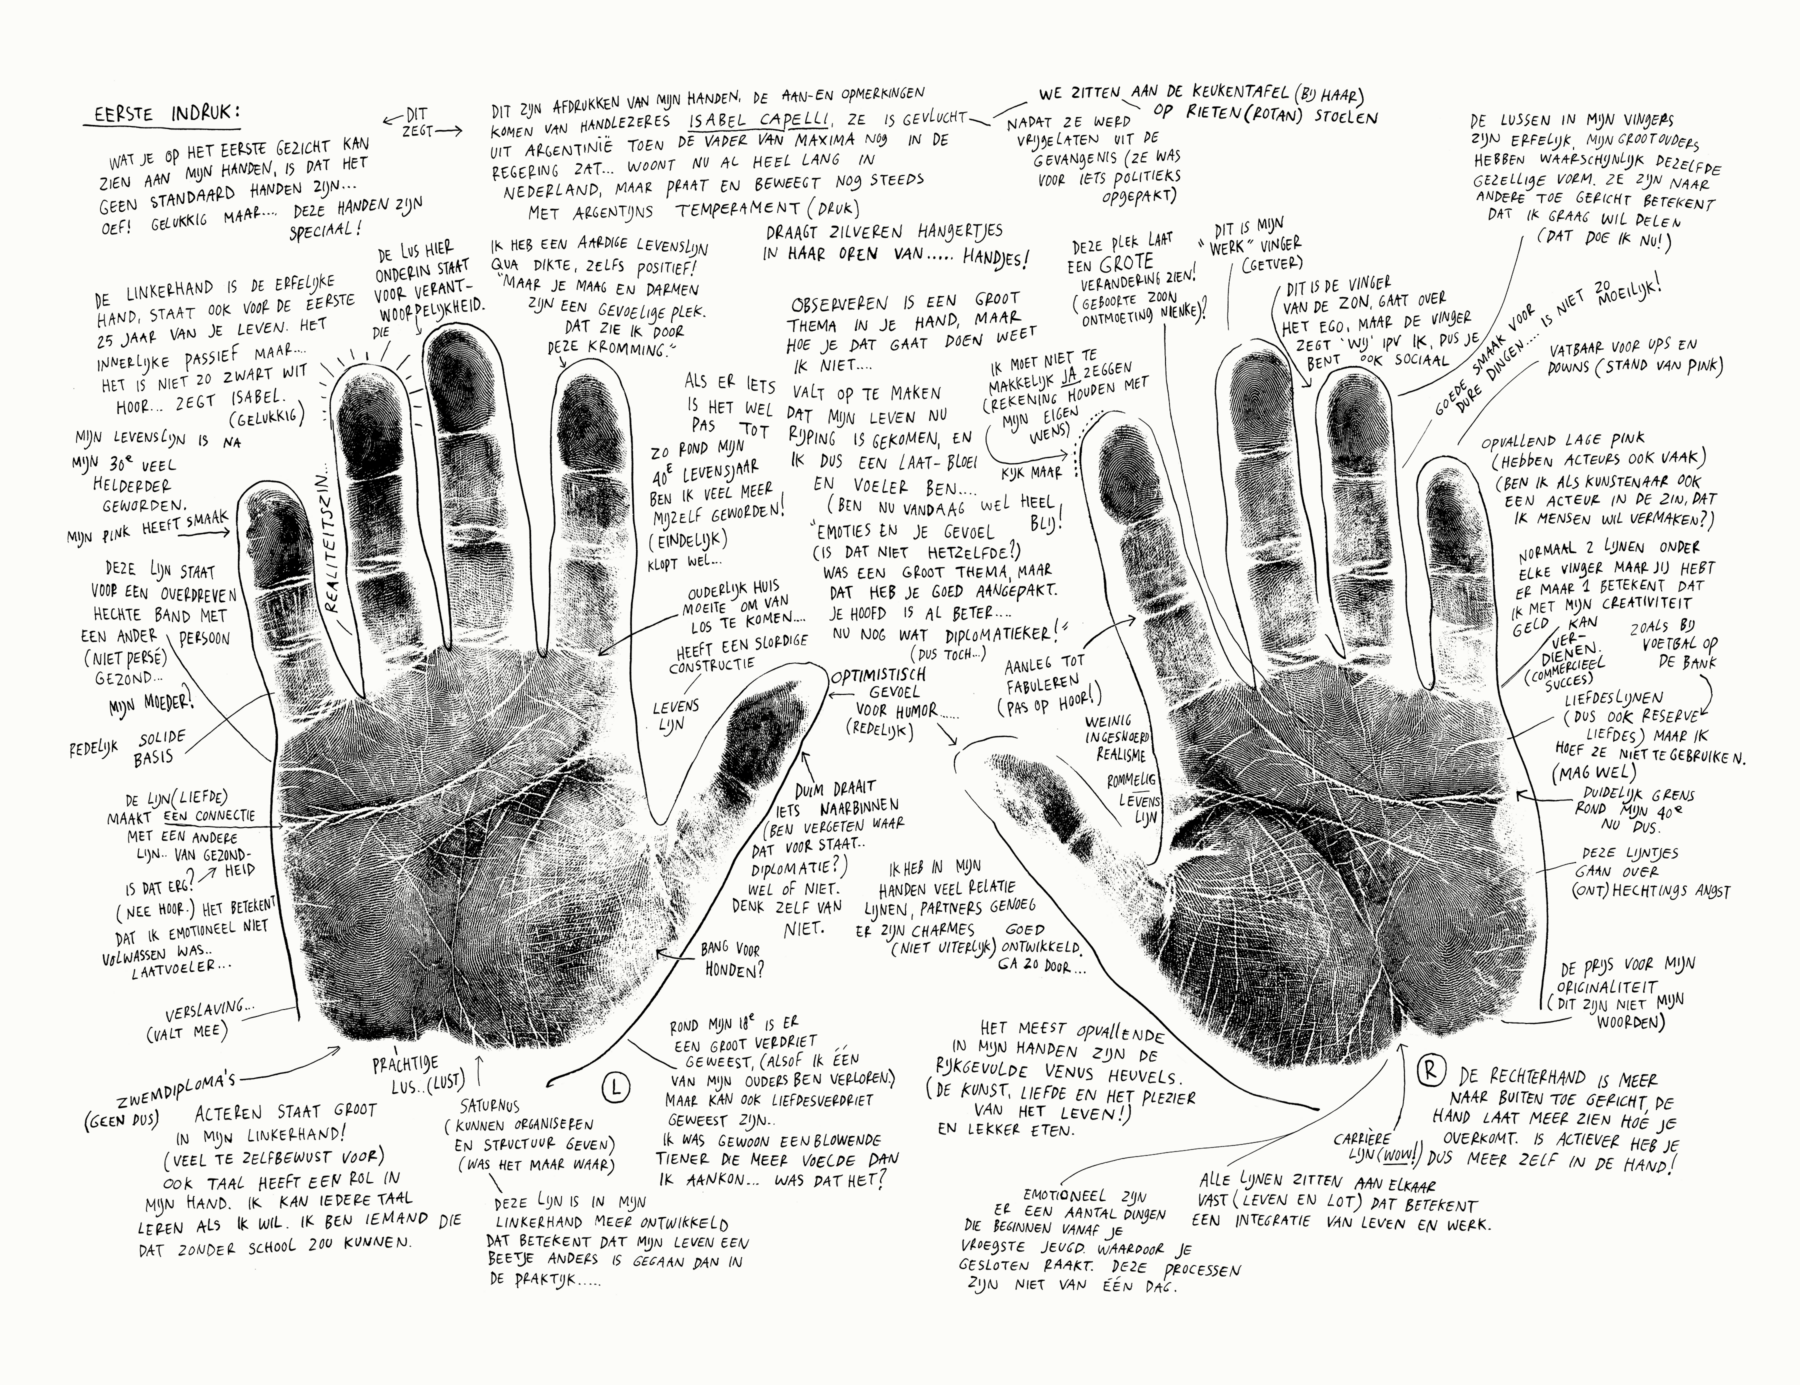 handen - tekst - vingers - vingerafdruk